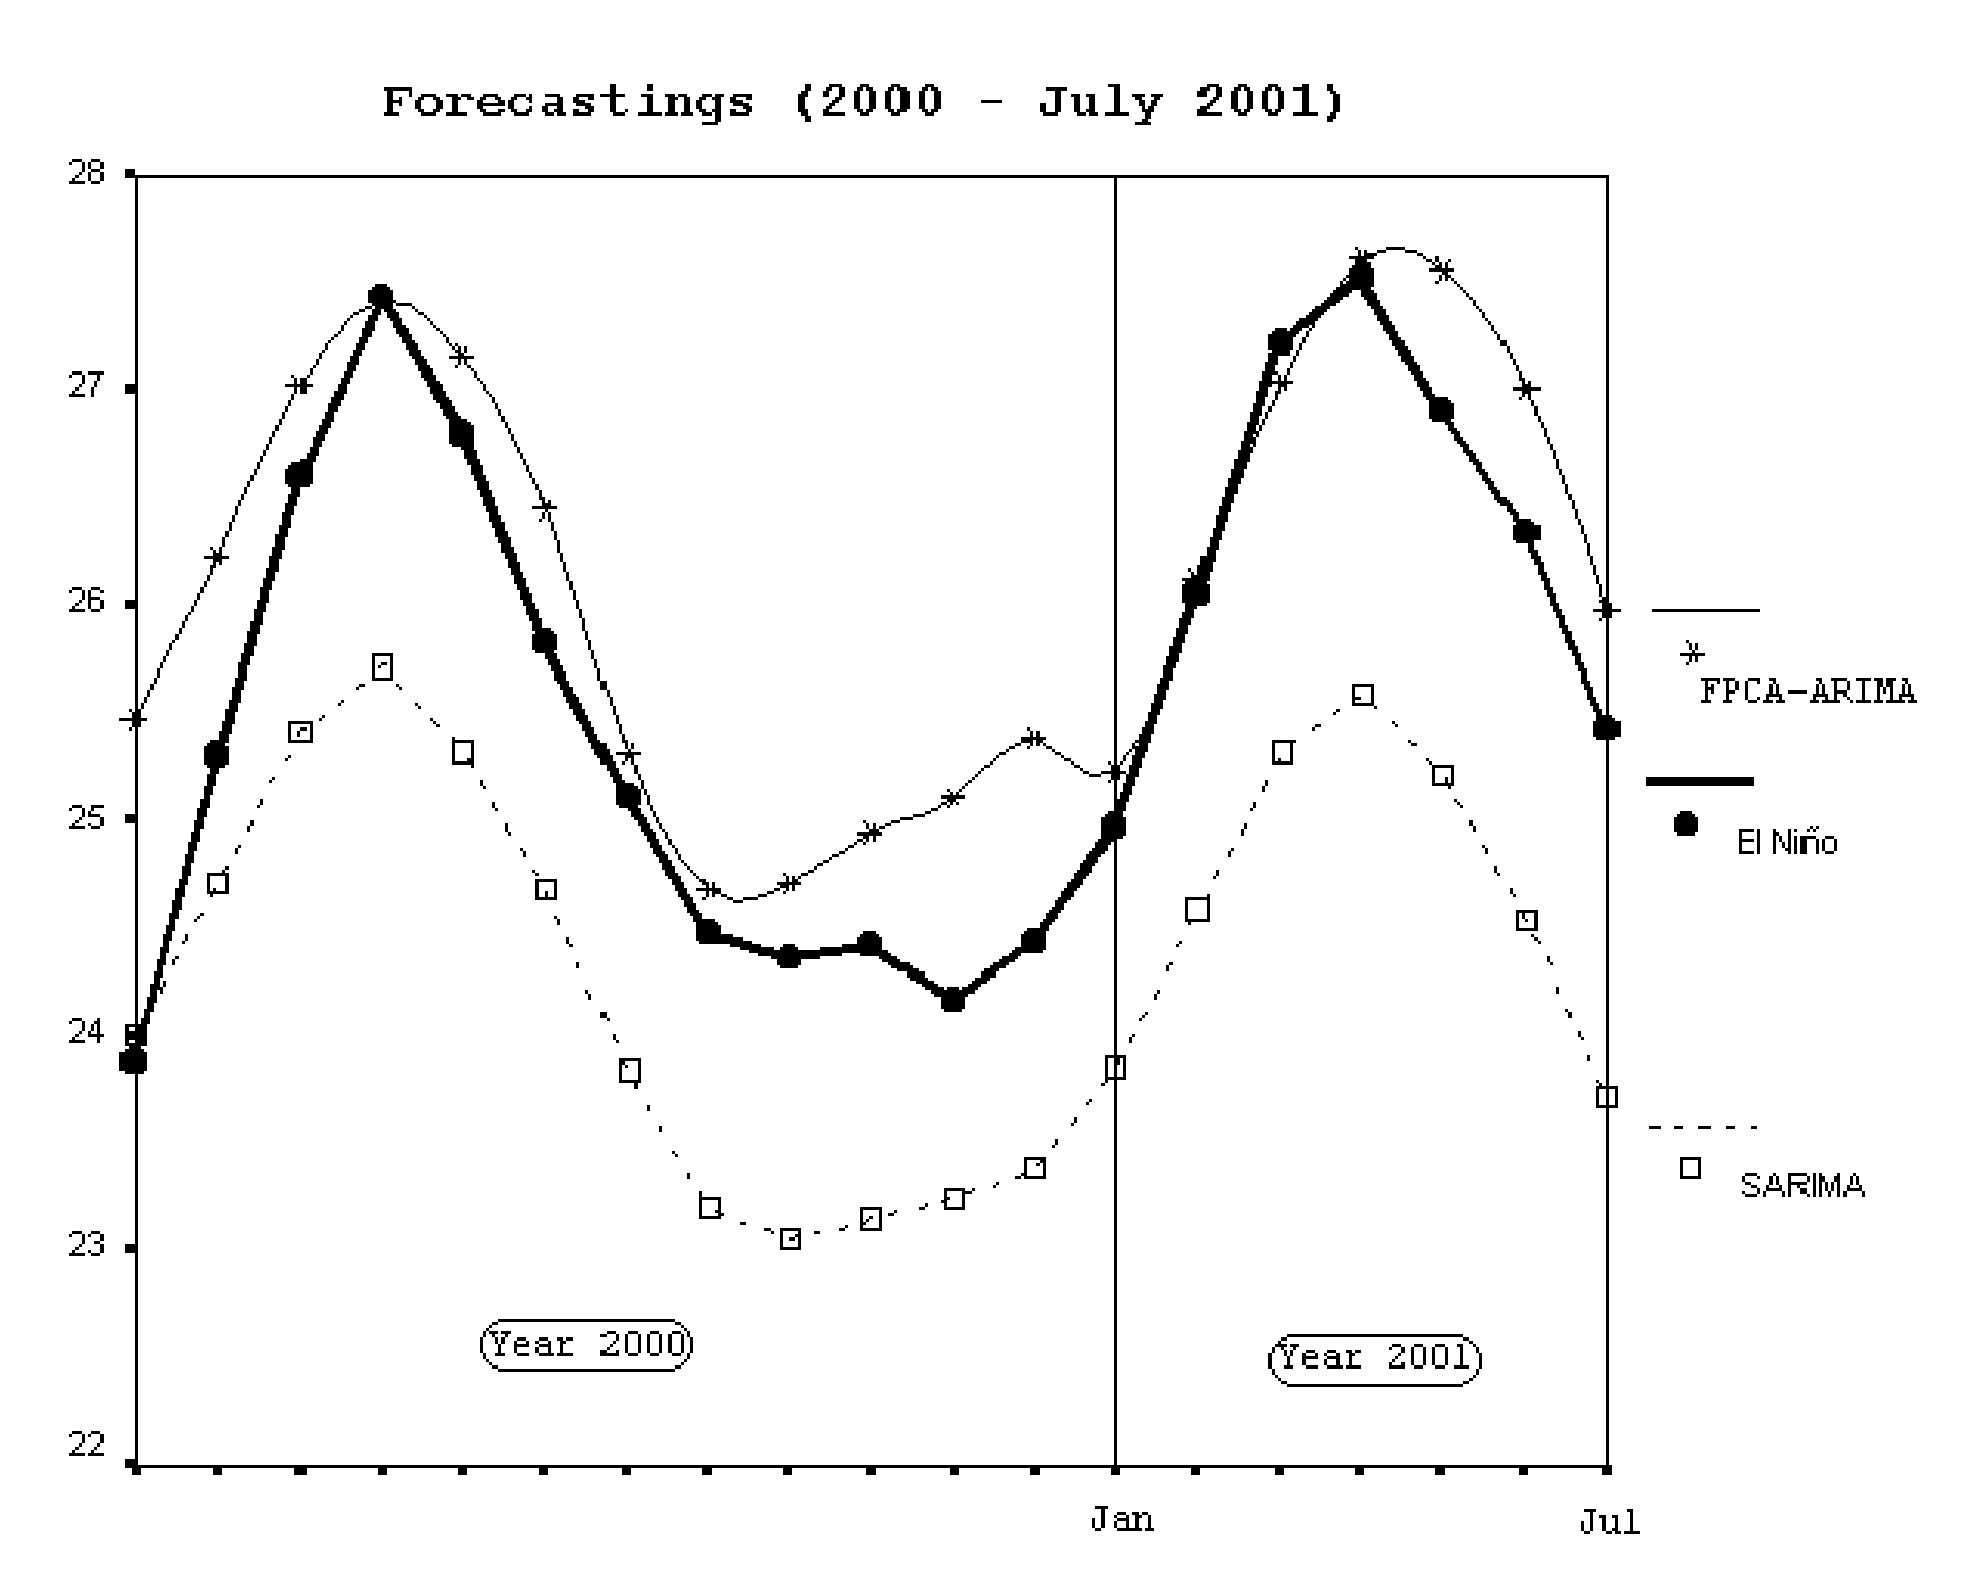 Serie climatolgica de El Nio junto con predicciones completas del ao 2000 y
parte del 2001, utilizando los datos disponibles hasta diciembre de 1999.
 Forecasting PC-ARIMA Models for Functional Data (2002). 
Mariano J. Valderrama, Francisco A. Ocana, Ana M. Aguilera
